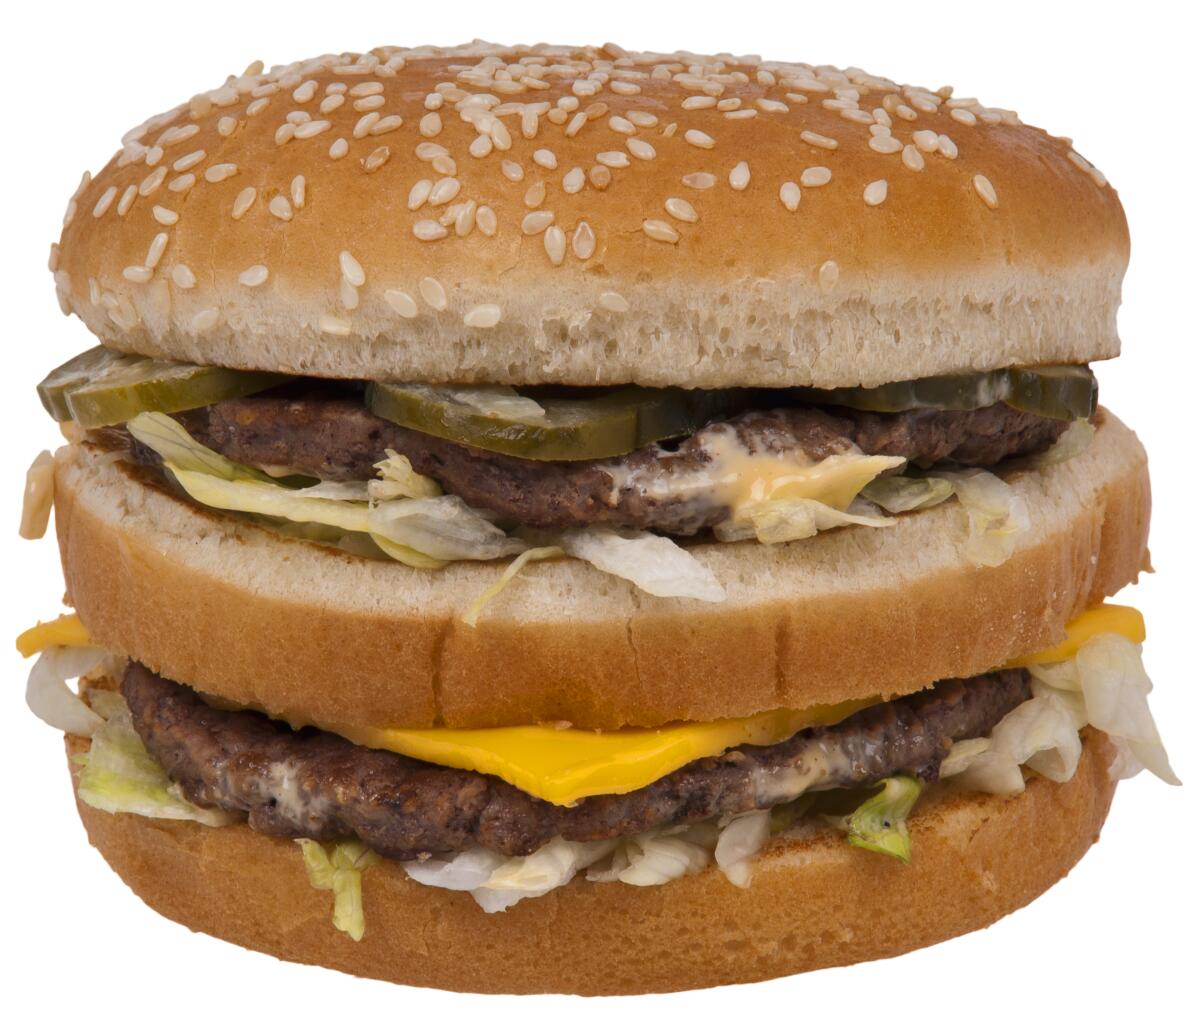 A photo of a McDonald's Big Mac hamburger. 